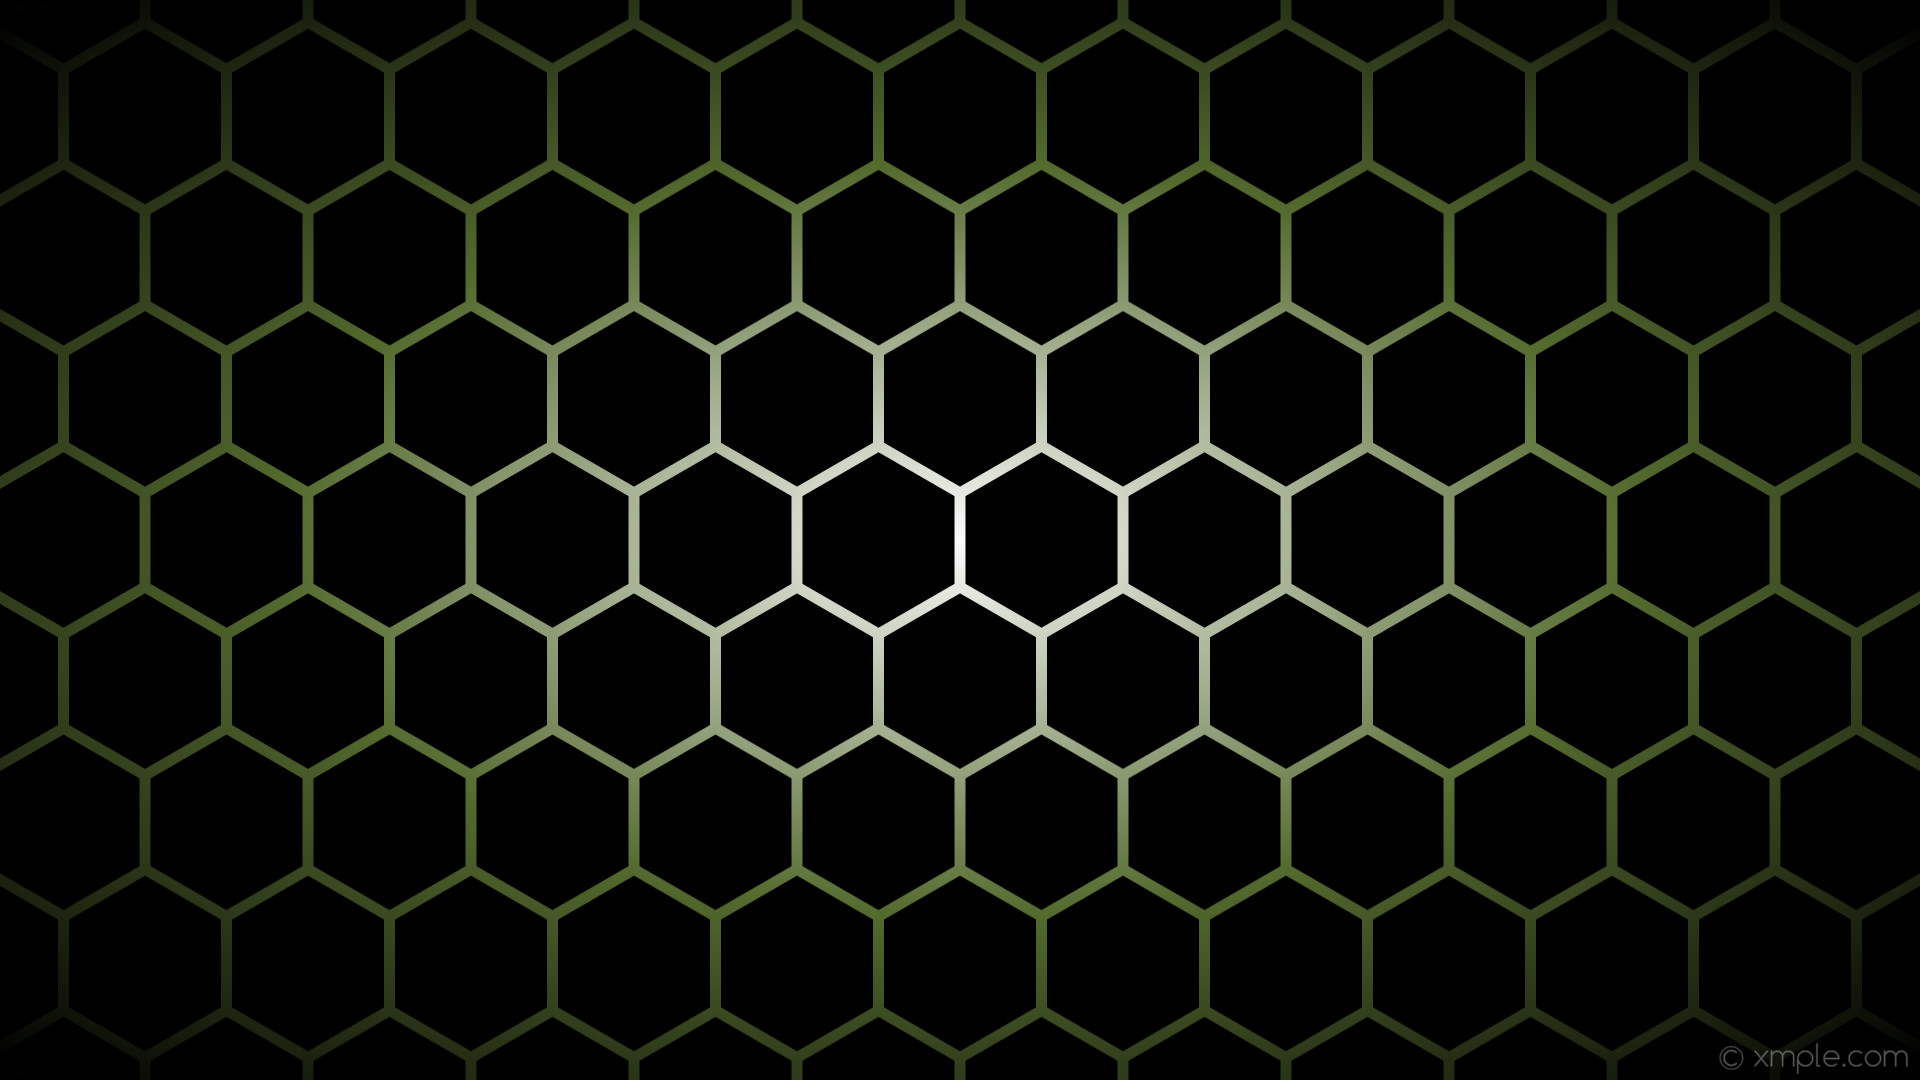 1920x1080 wallpaper black white glow gradient hexagon green dark olive green #000000  #ffffff #556b2f